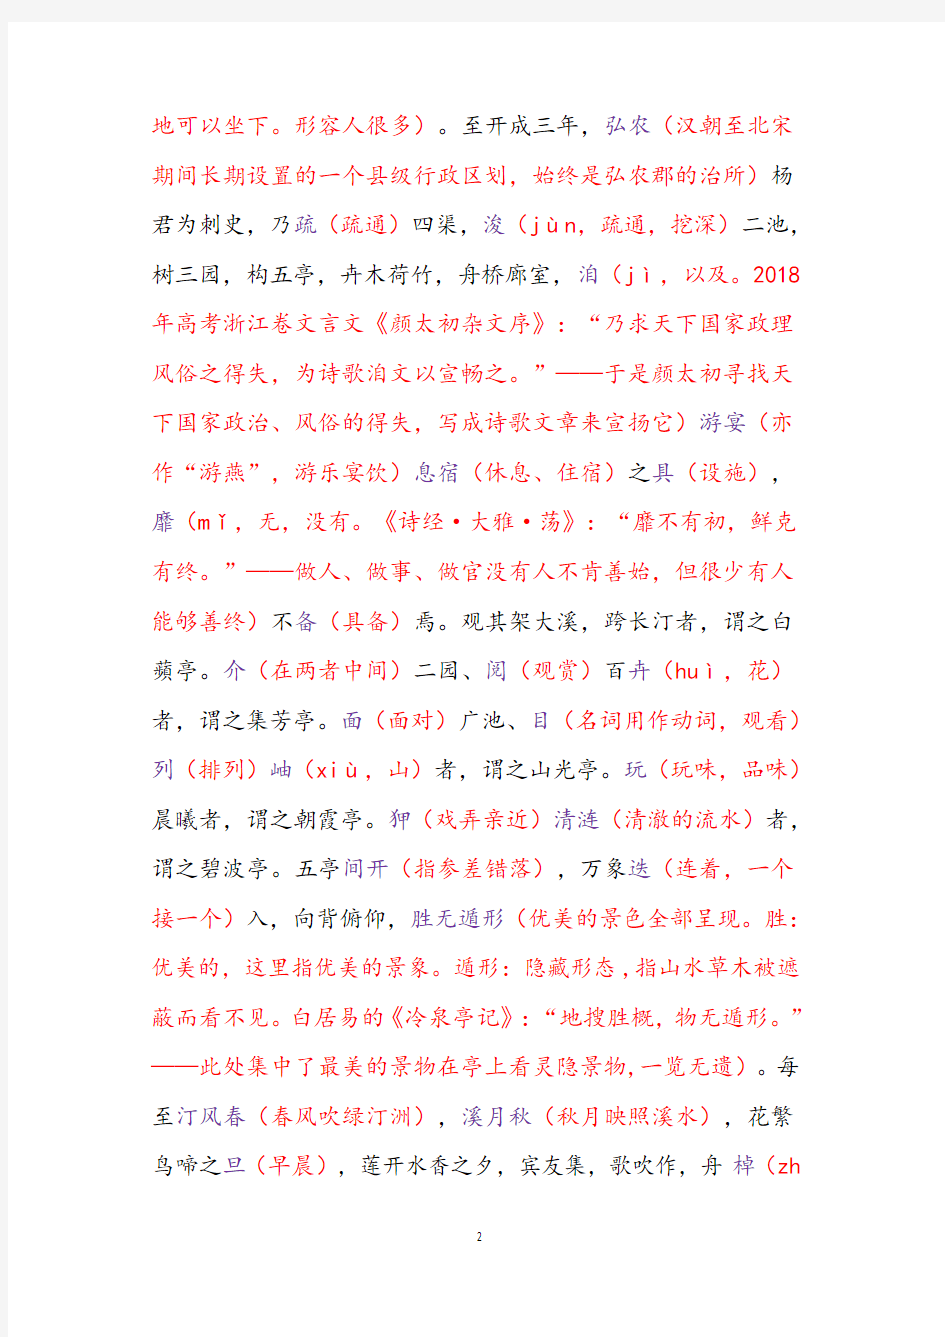 2018年高考天津卷文言文《白苹洲五亭记》注释试题答案解析译文